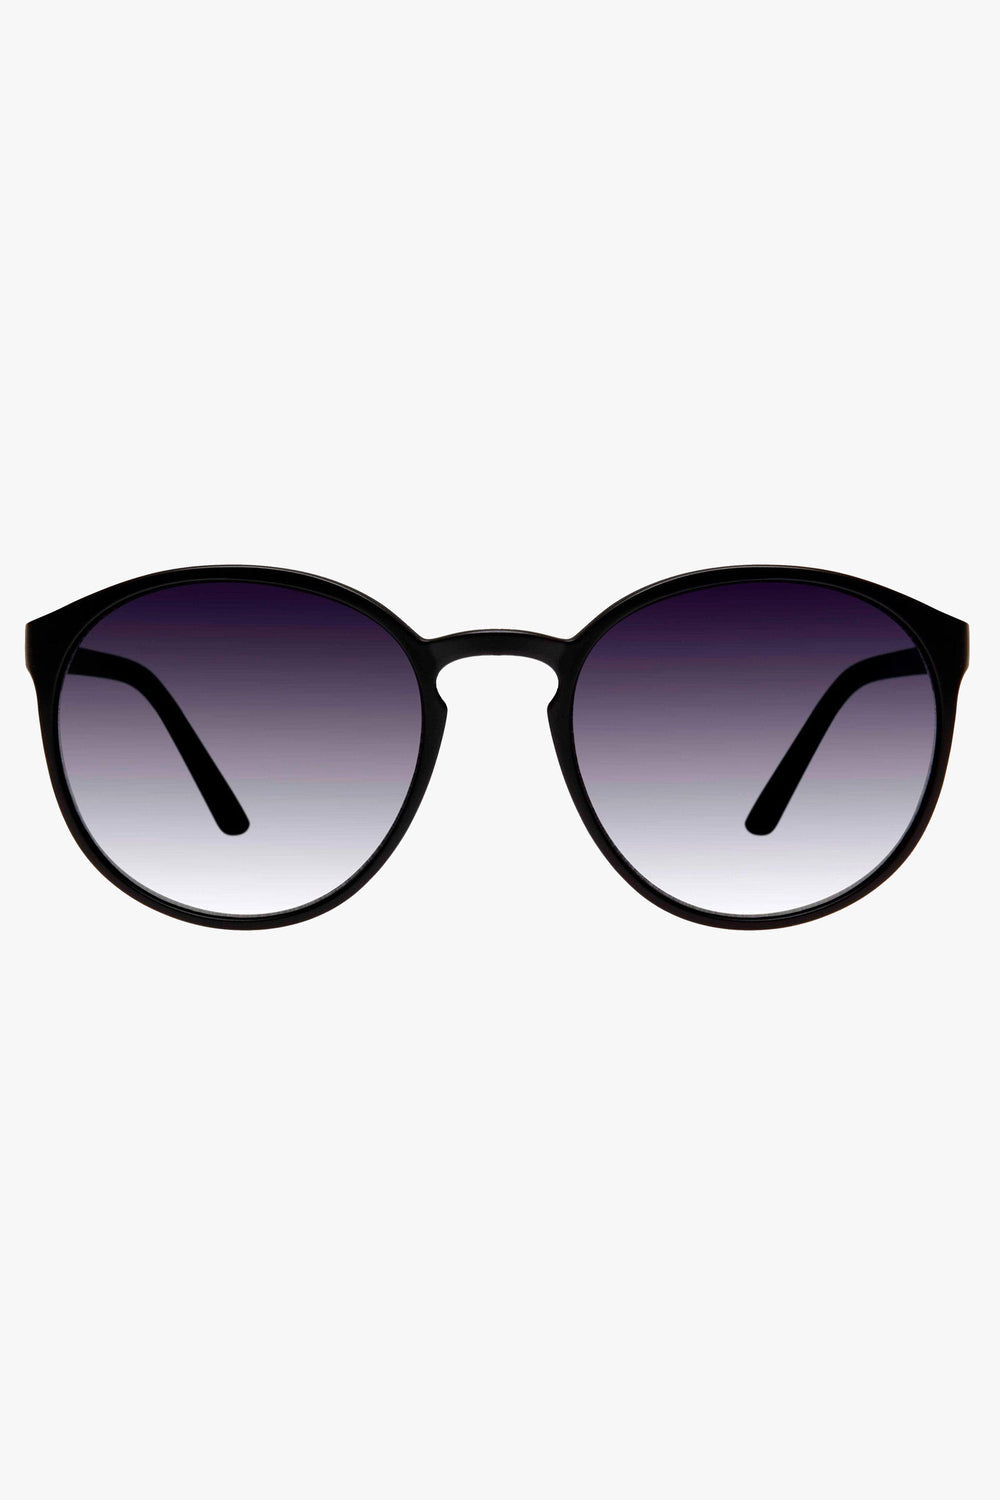 Swizzle Sunglasses in Matte Black